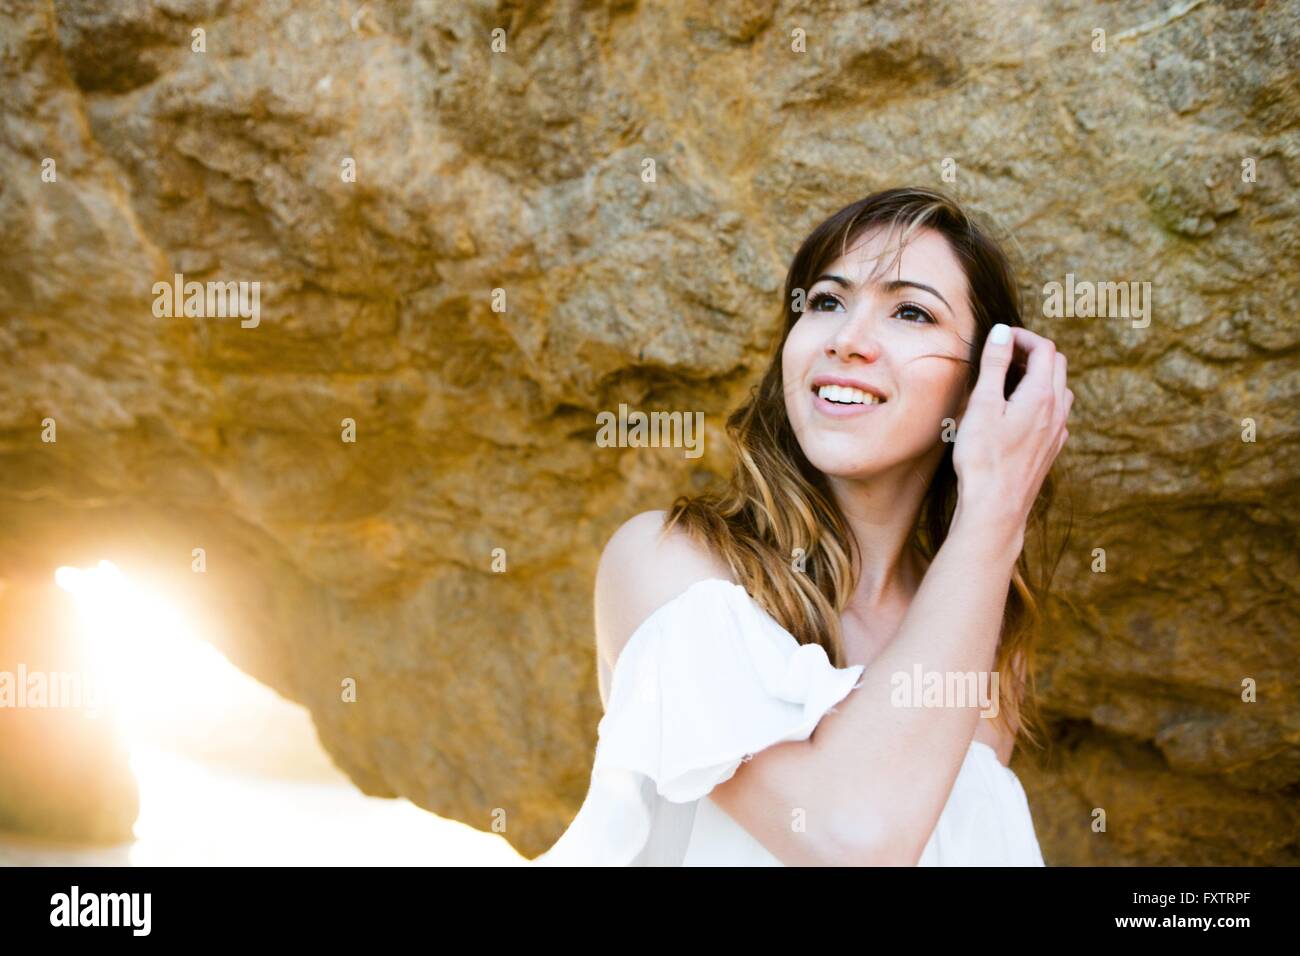 Giovane donna riordino capelli dietro la formazione di roccia Foto Stock